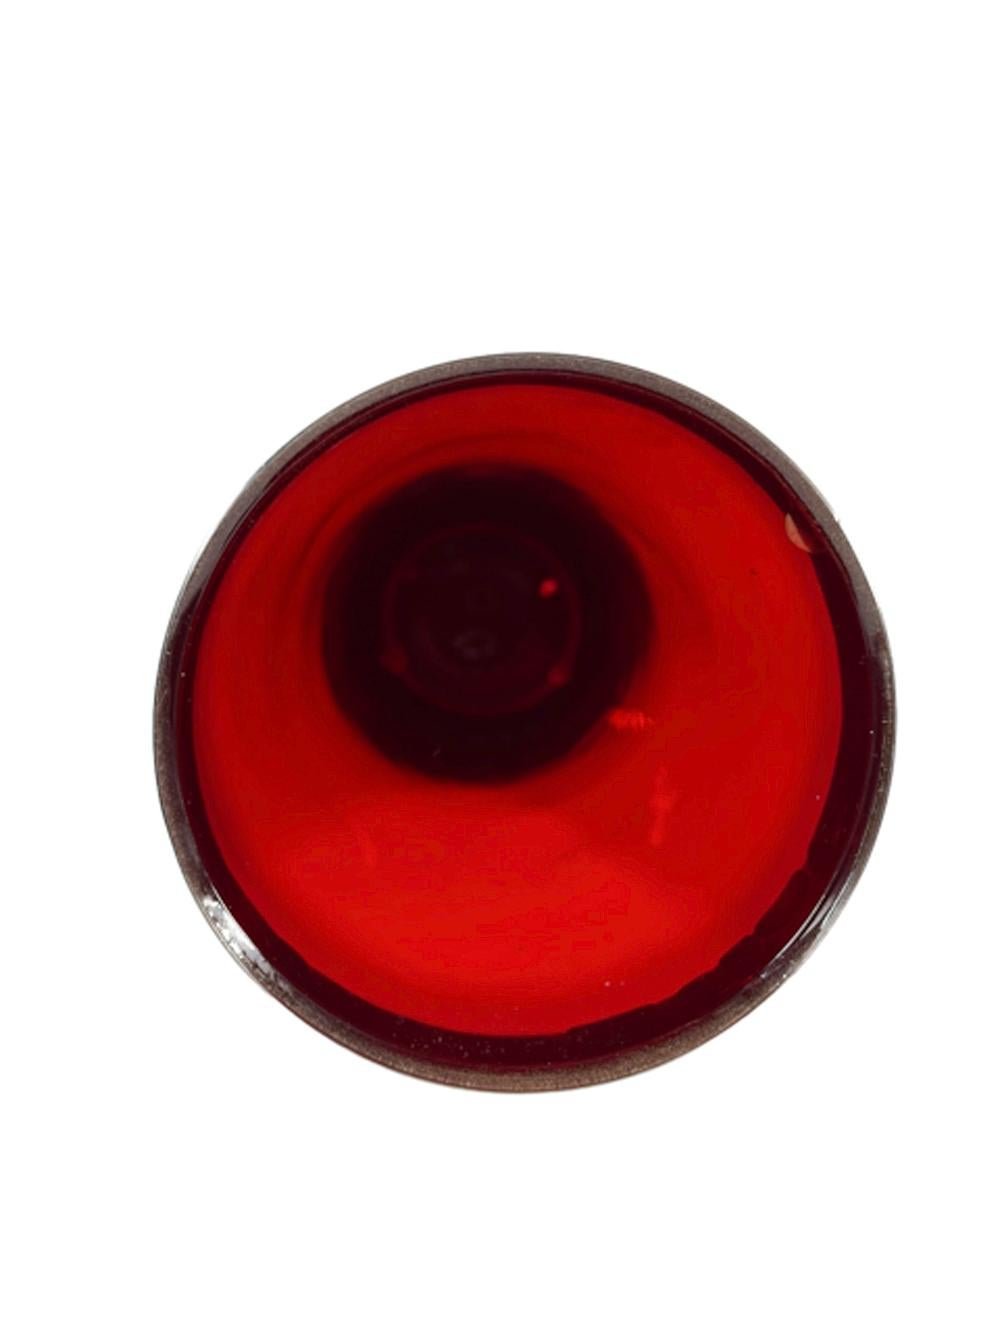 Shakers Art Déco en verre rubis avec bord chromé surmonté d'un couvercle chromé à haut dôme avec capuchon central sur une passoire intégrée.